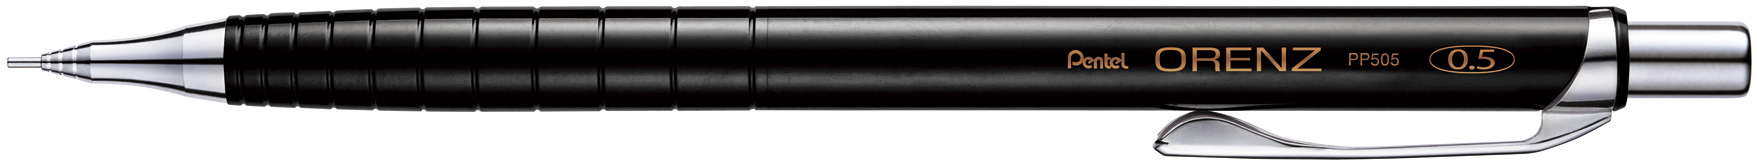 Карандаш механический Pentel Orenz PP505-A черный корпус 0,5мм